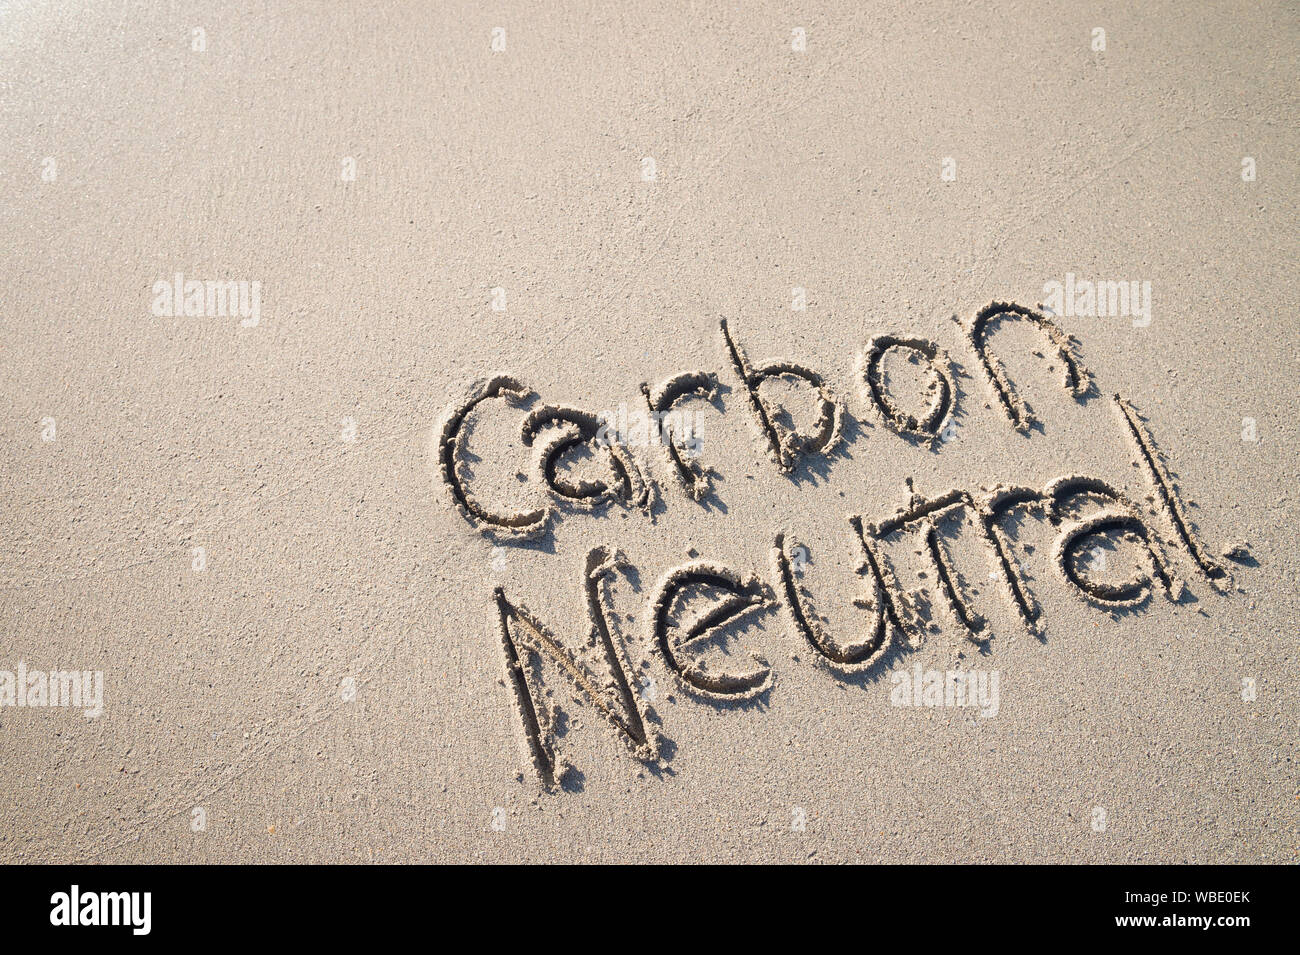 Co2-neutral Nachricht handschriftlich auf glatten Sandstrand Stockfoto